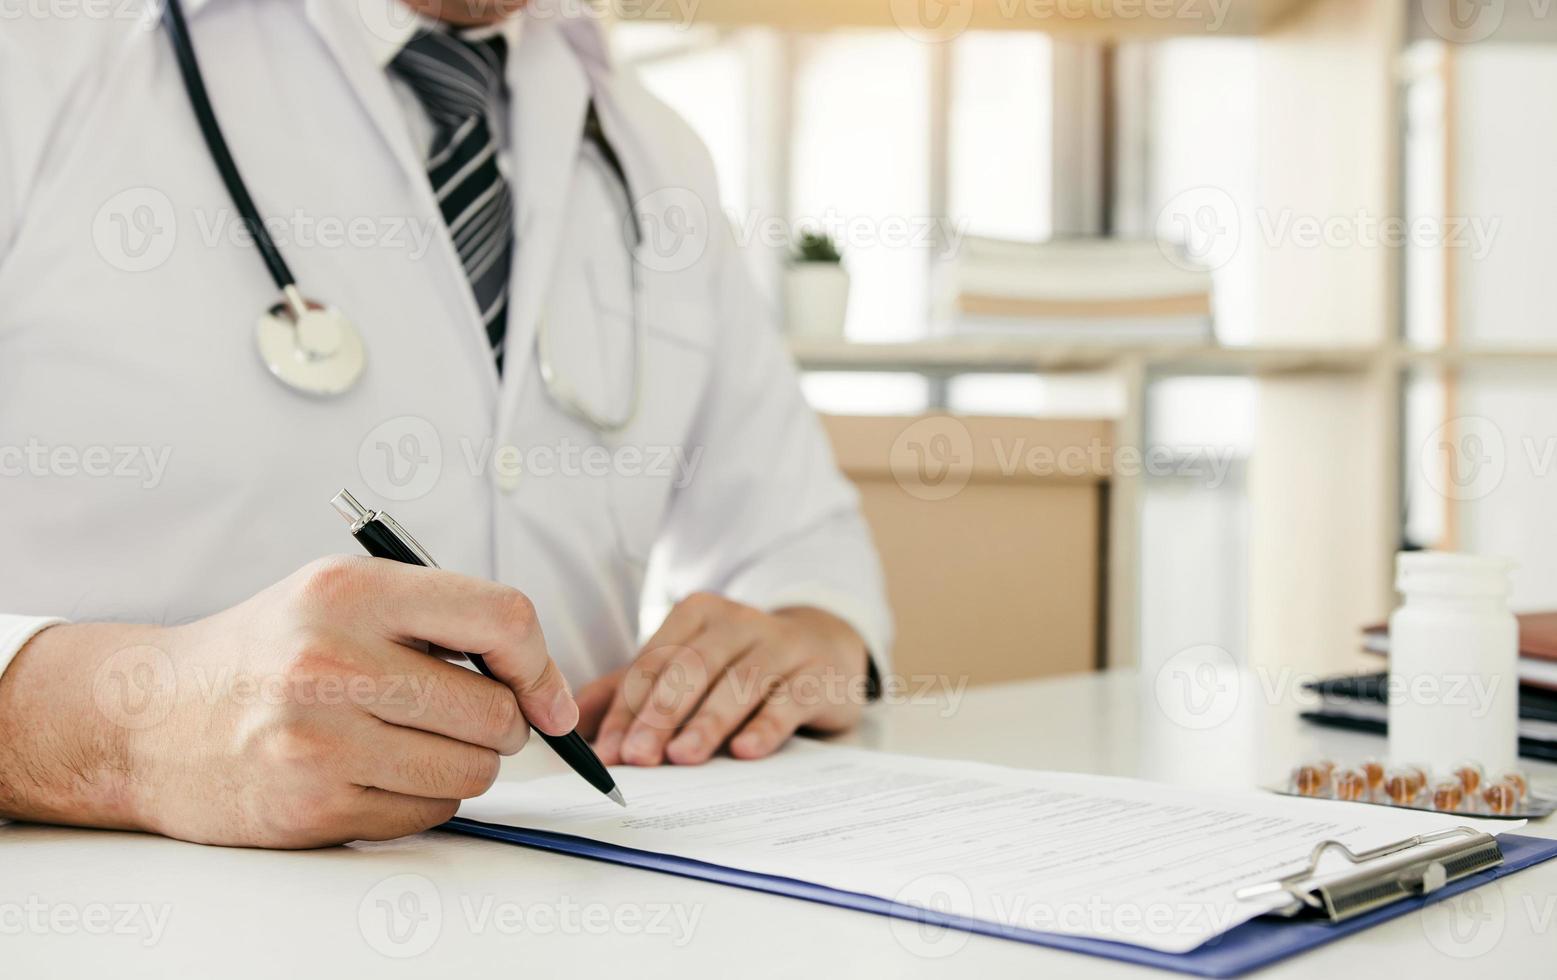 mão do médico segurando a caneta escrevendo a lista de histórico do paciente no bloco de notas e conversando com o paciente sobre medicação e tratamento. foto